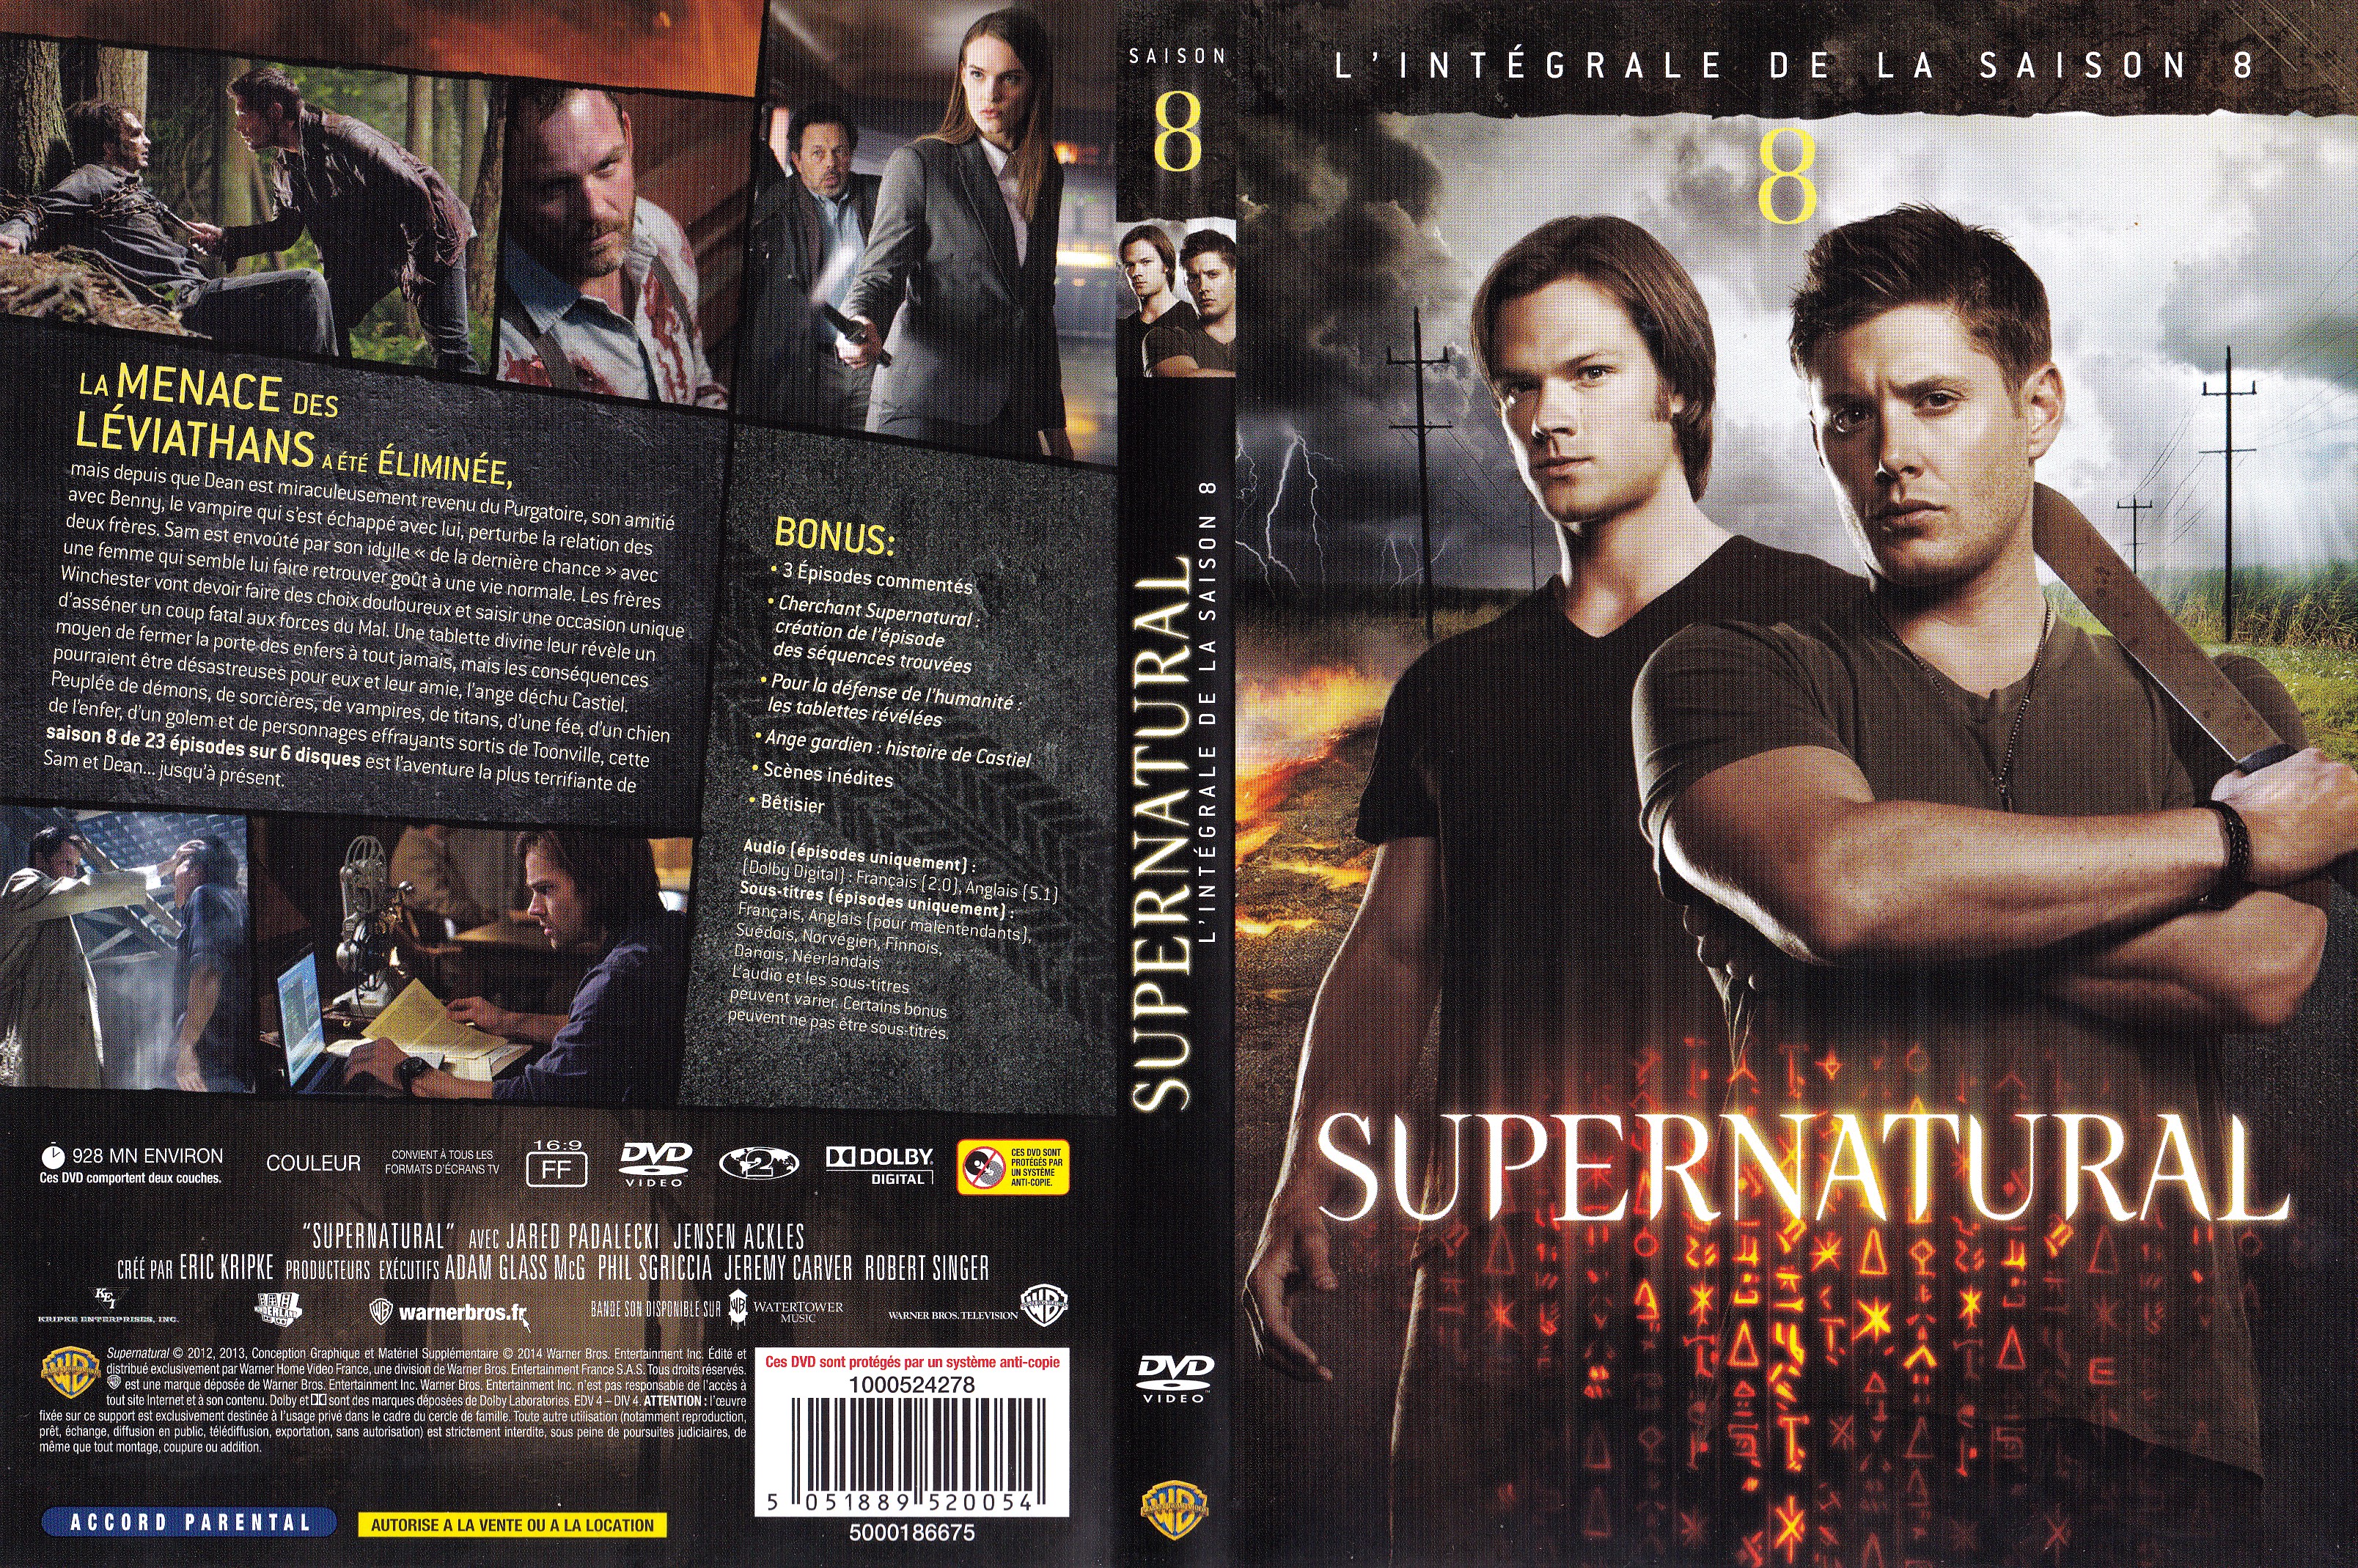 Jaquette DVD Supernatural saison 8 COFFRET